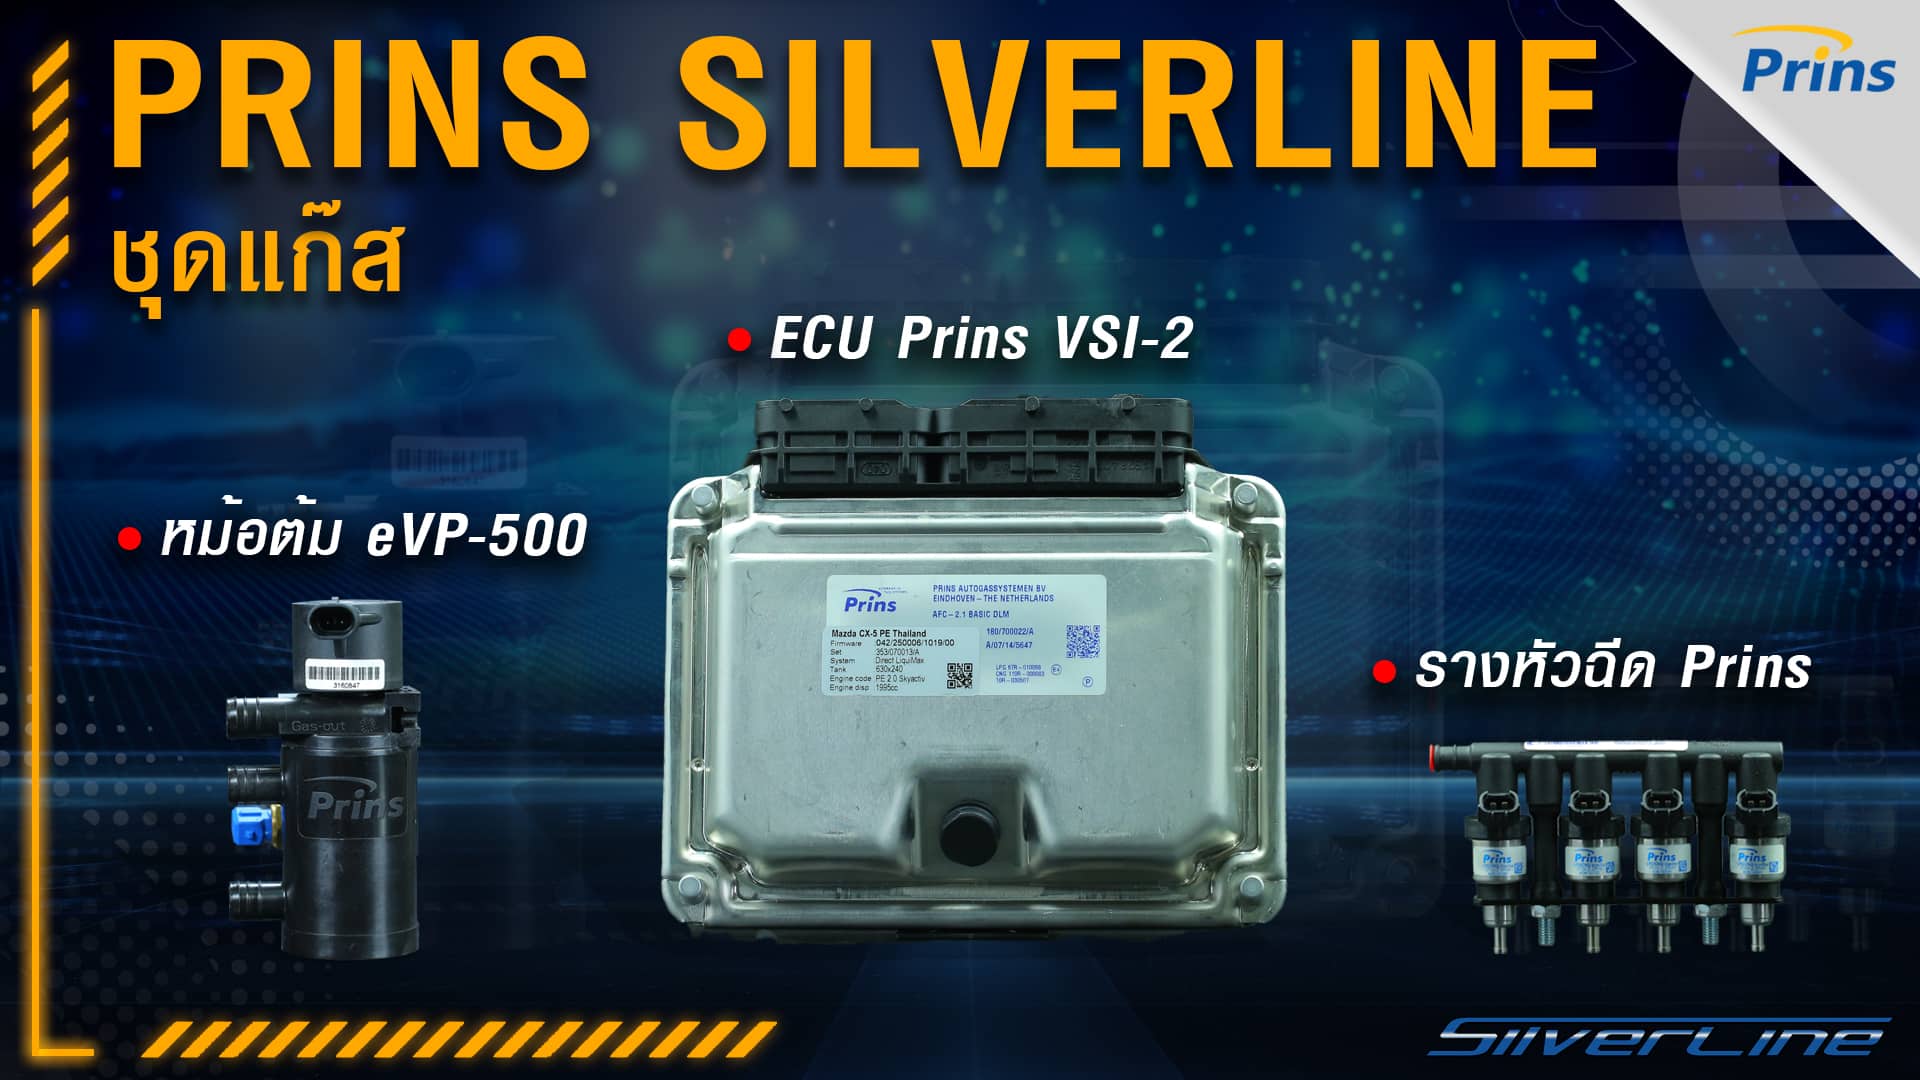 ชุดแก๊ส Prins Silverline - ECU Prins VSI-2, รางหัวฉีด Prins, หม้อต้ม eVP-500